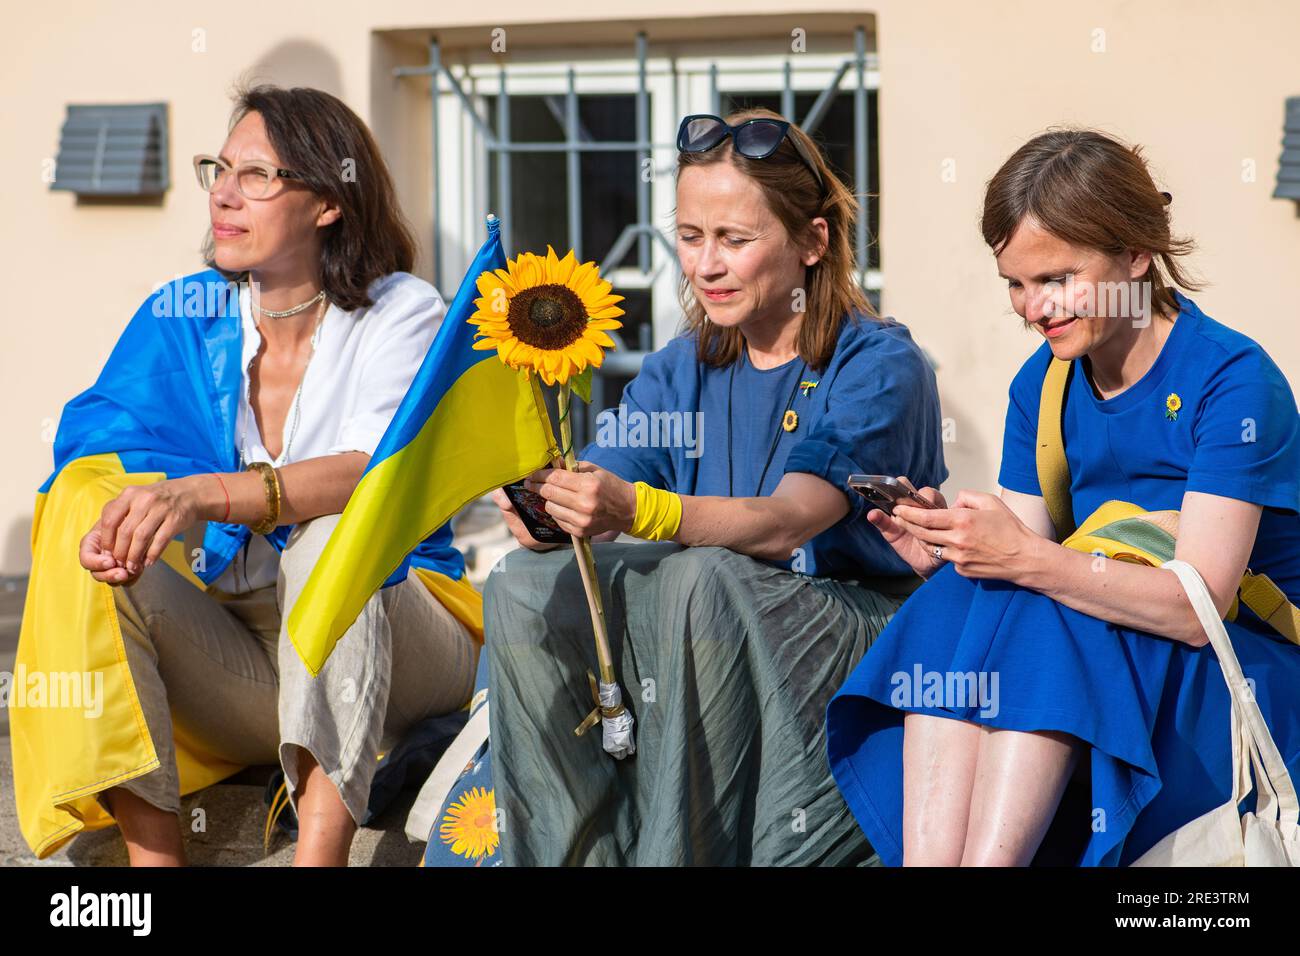 Tre donne ucraine con bandiere e girasole durante una manifestazione pacifica contro la guerra, Putin e la Russia a sostegno dell'Ucraina Foto Stock